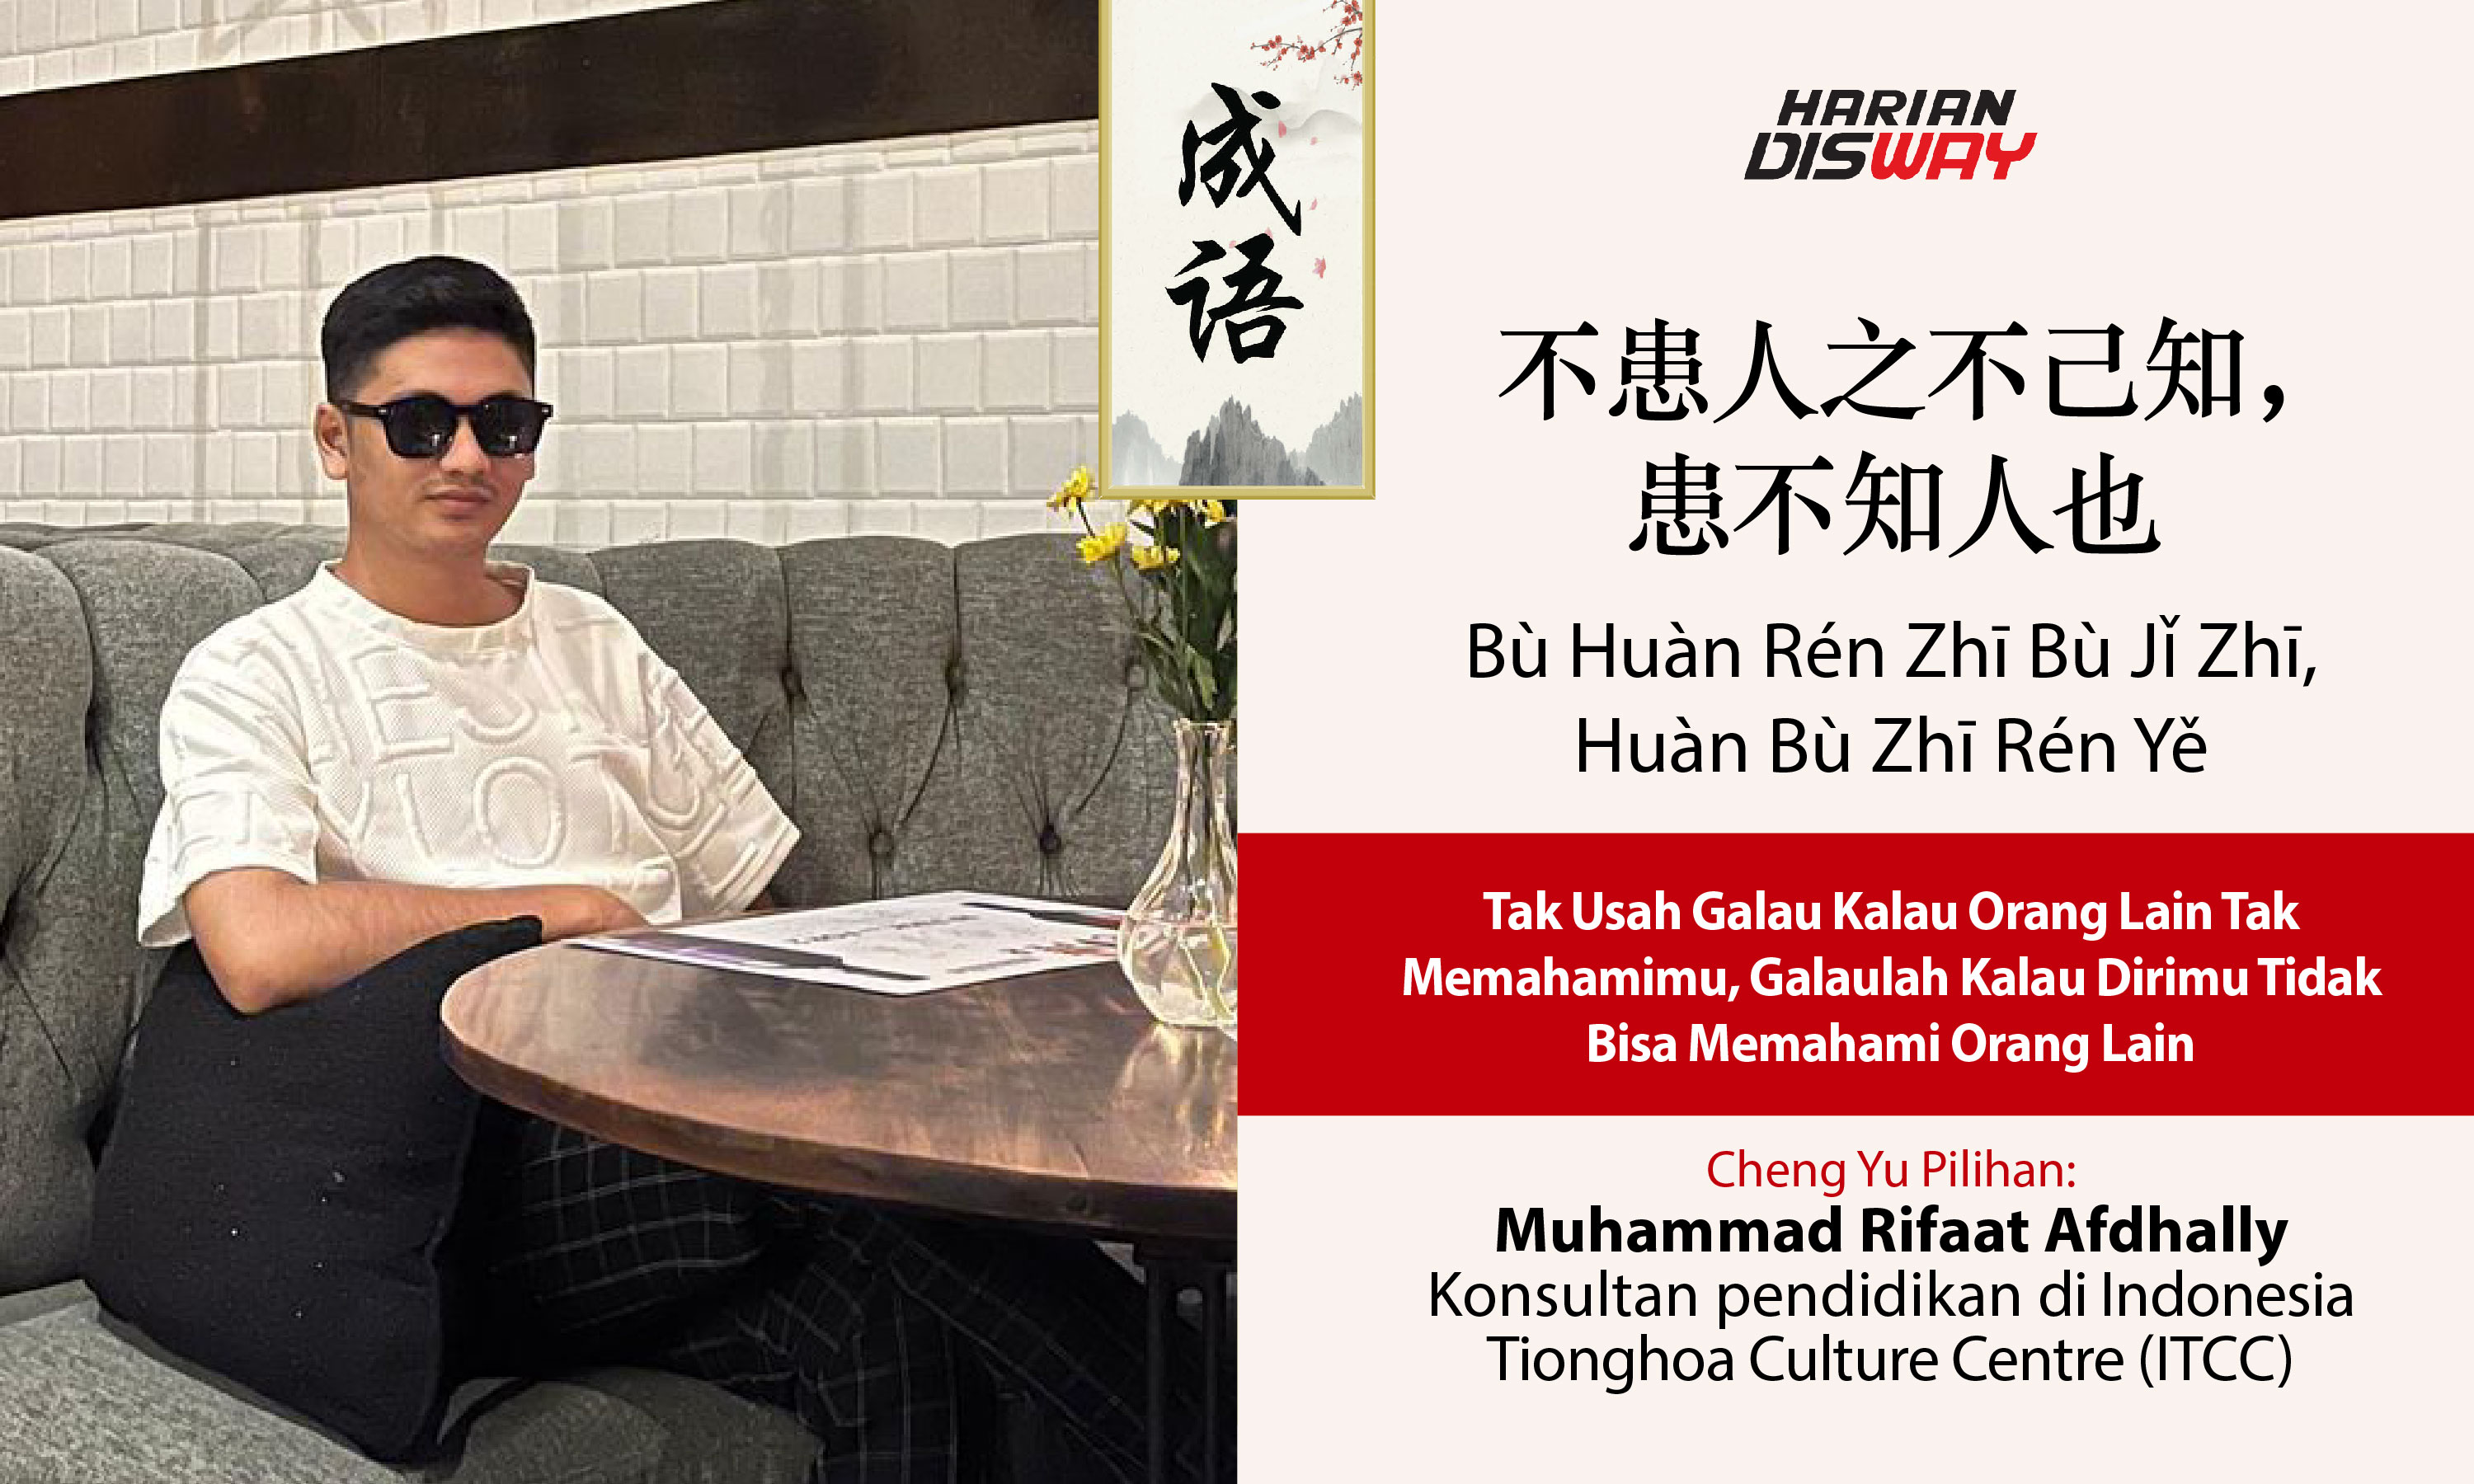 Cheng Yu Pilihan Konsultan Pendidikan di Indonesia Tionghoa Culture Centre (ITCC) Muhammad Rifaat Afdhally: Bu Huan Ren Zhi Bu Ji Zhi, Huan Bu Zhi Ren